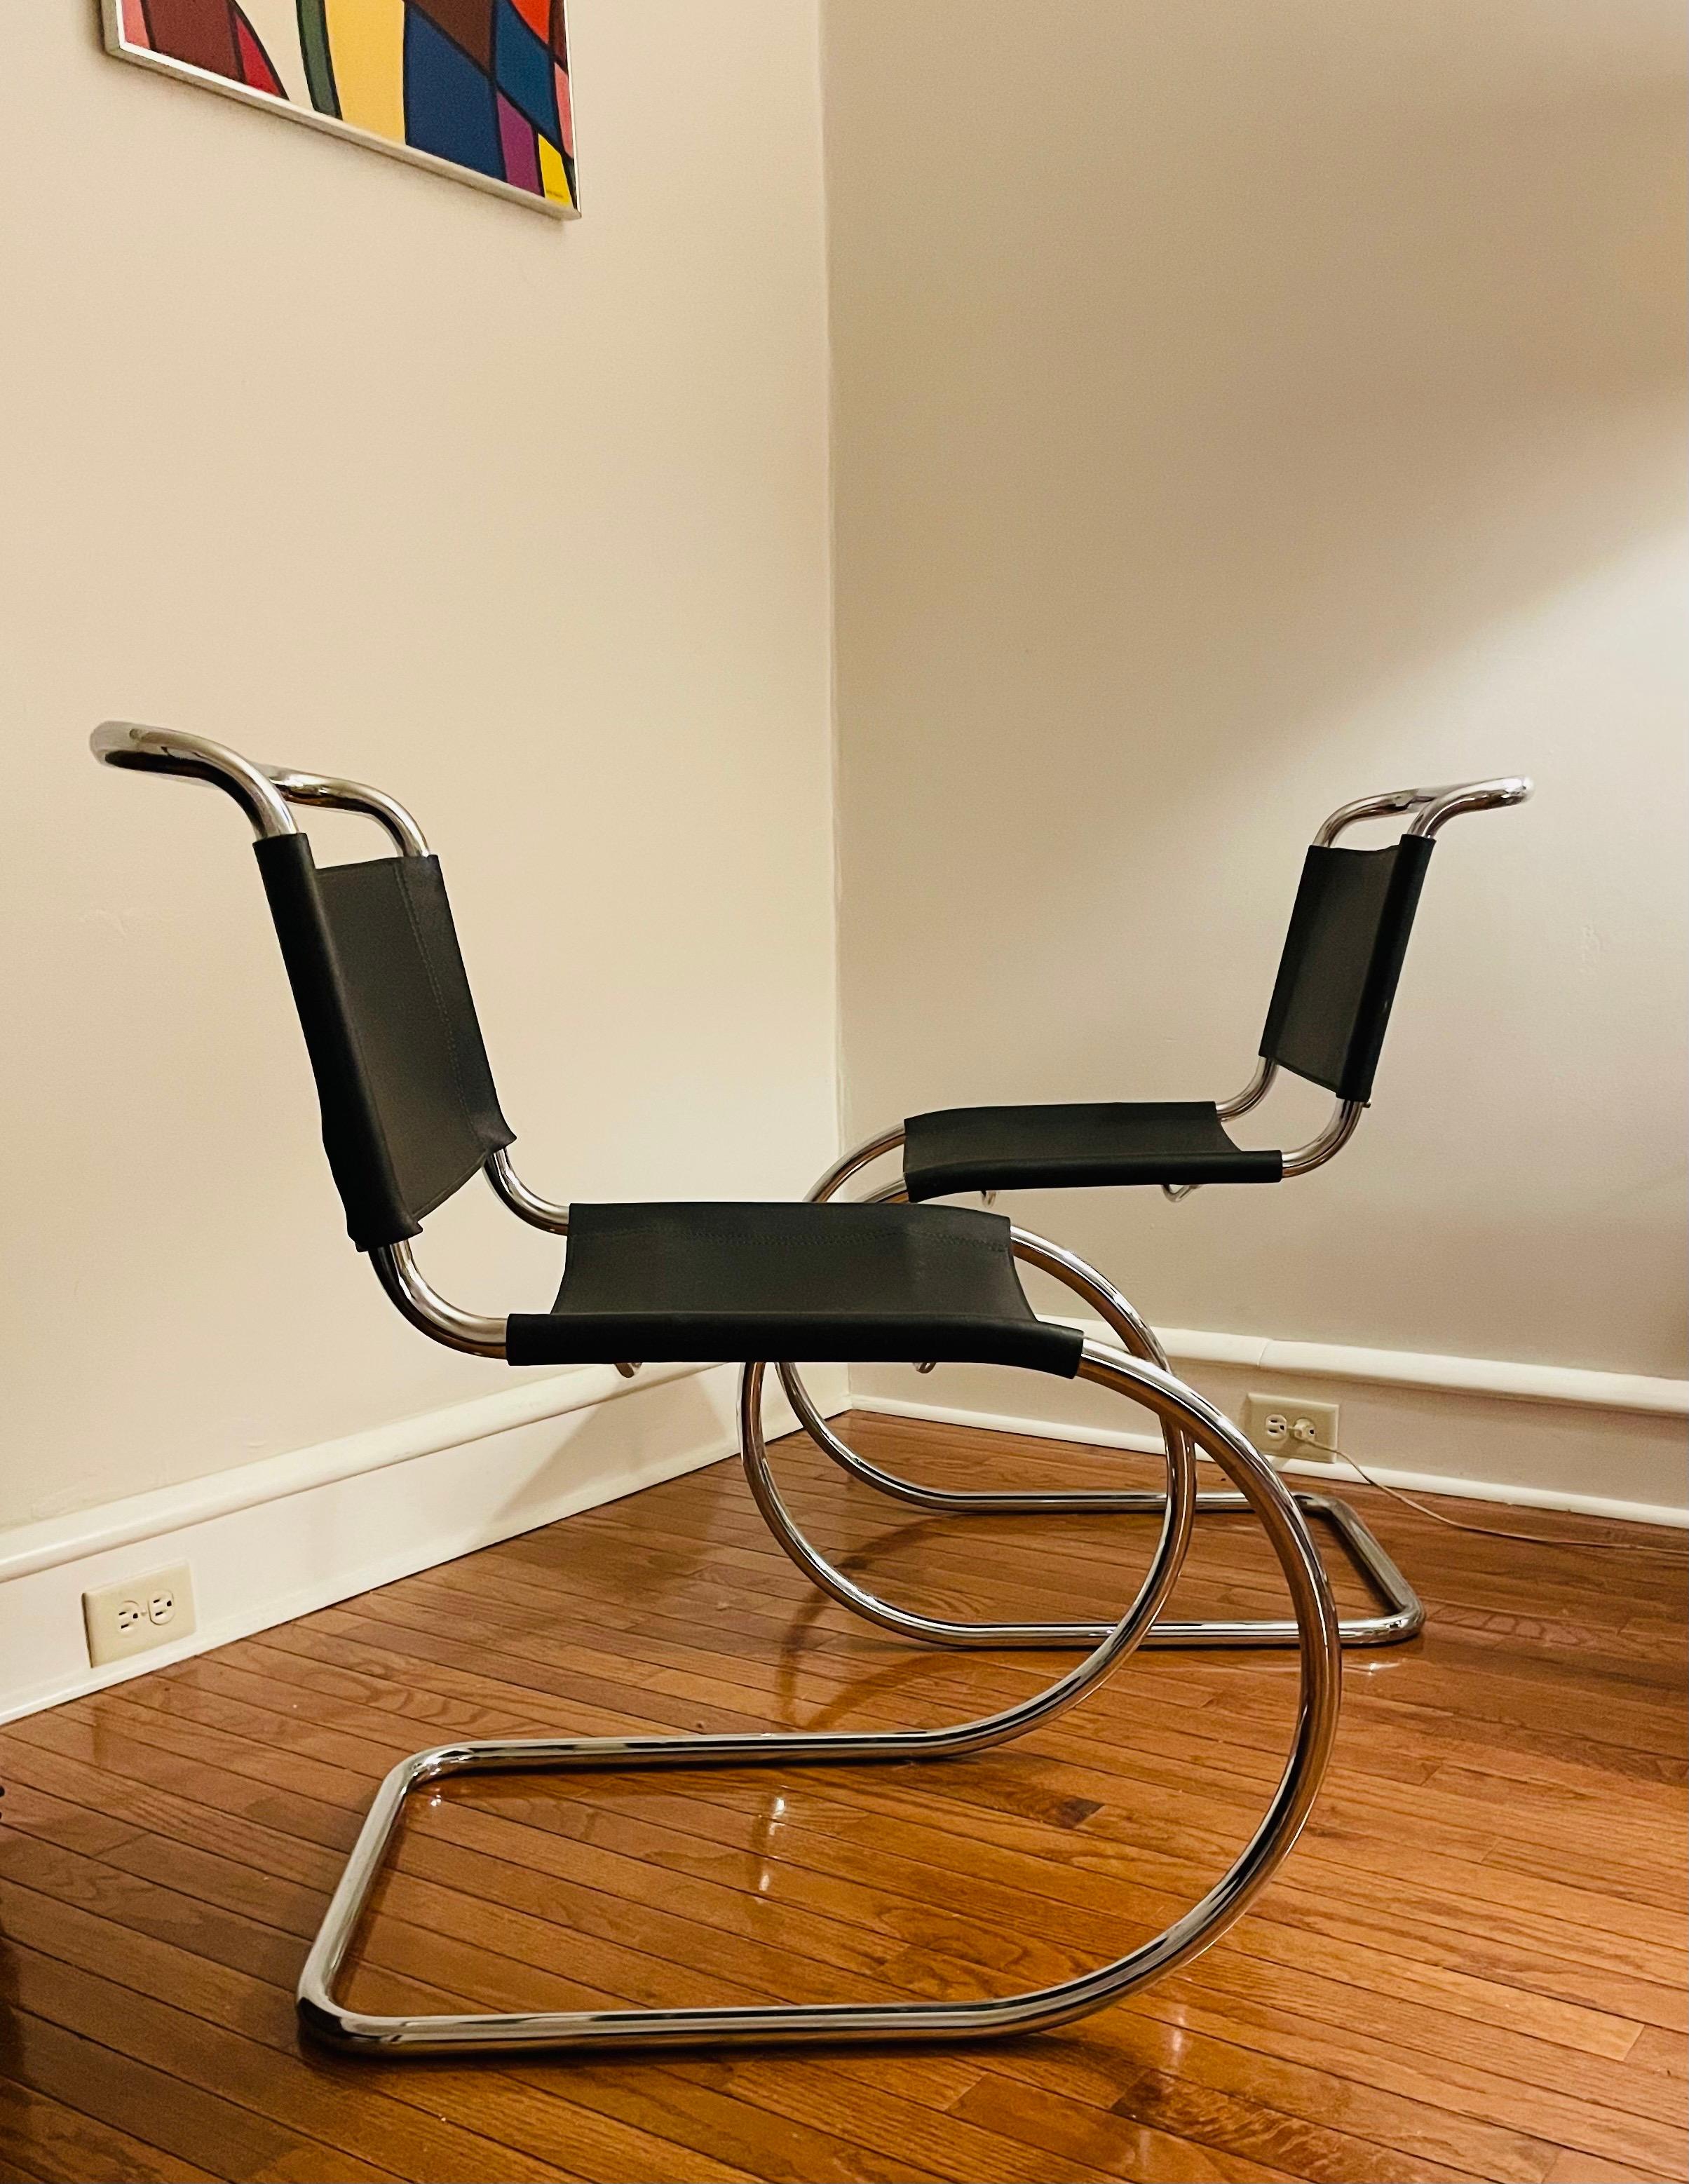 Il s'agit d'une paire de chaises de salle à manger latérales MR10, initialement conçues par Ludwig Mies van der Rohe en 1927. Ces chaises datent des années 1980 et ne portent aucune marque. 

Ils sont dotés d'un cadre tubulaire en acier en